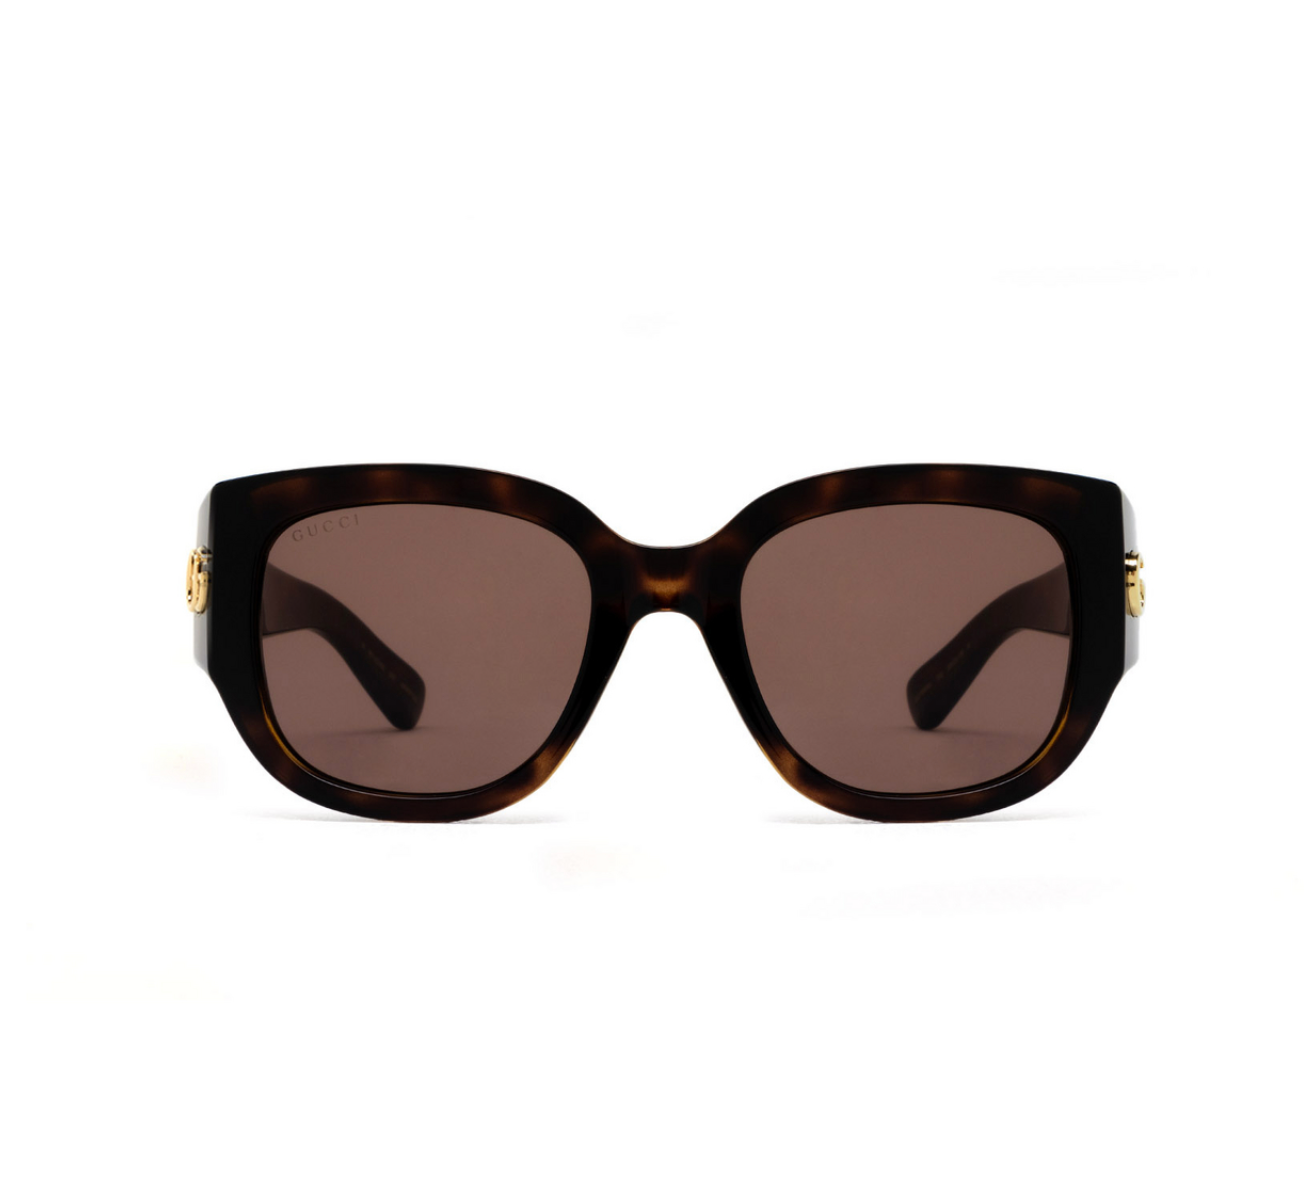 Gucci GG1599SA-002 52mm New Sunglasses